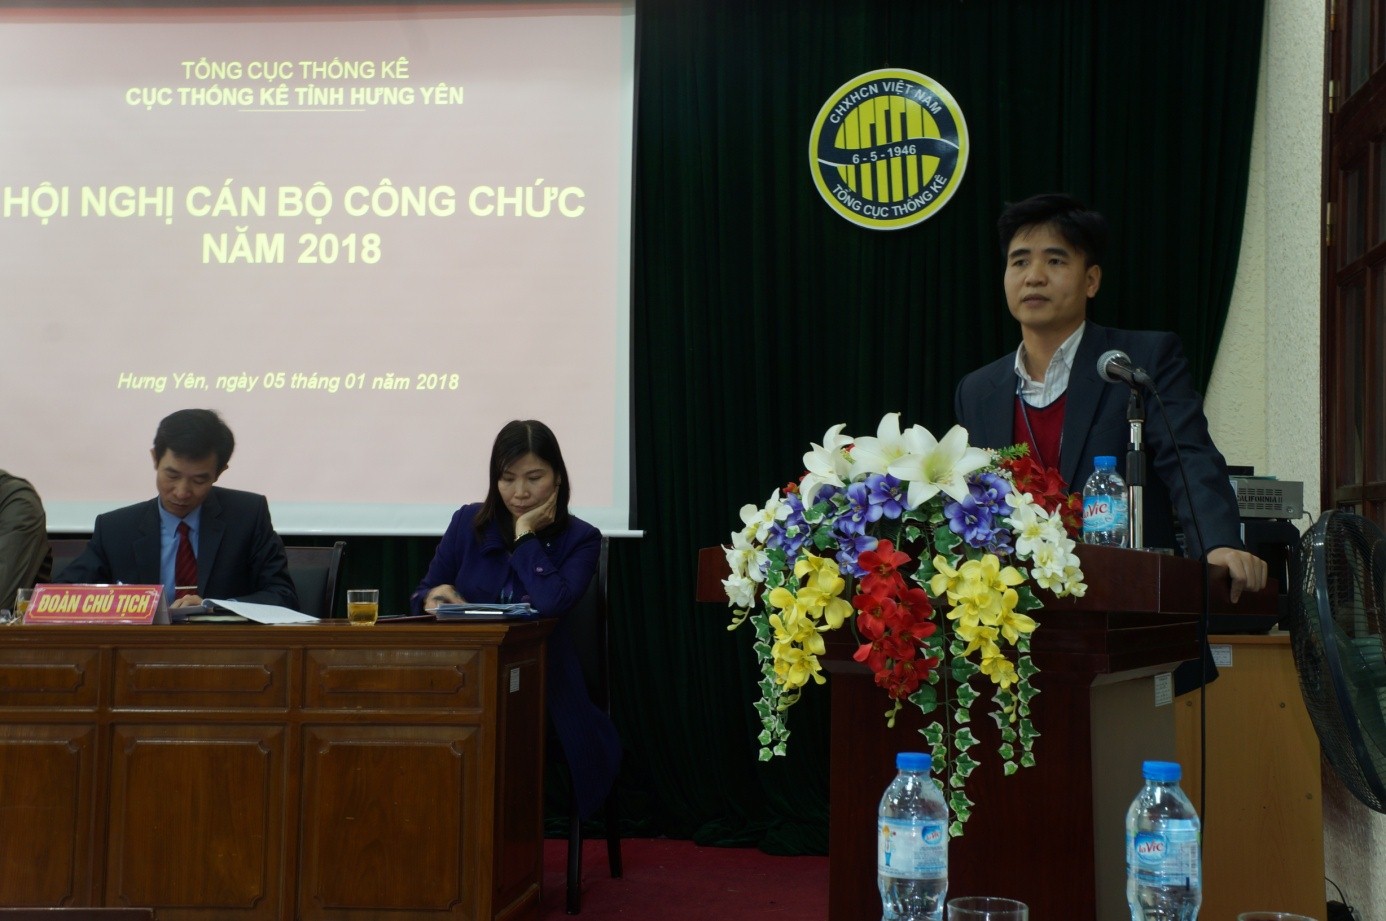 Ông Nguyễn Văn Định – Trưởng phòng Thanh tra Thống kê, Trưởng ban thanh tra nhân dân trình bày kết quả hoạt động công tác thanh tra nhân dân năm 2017